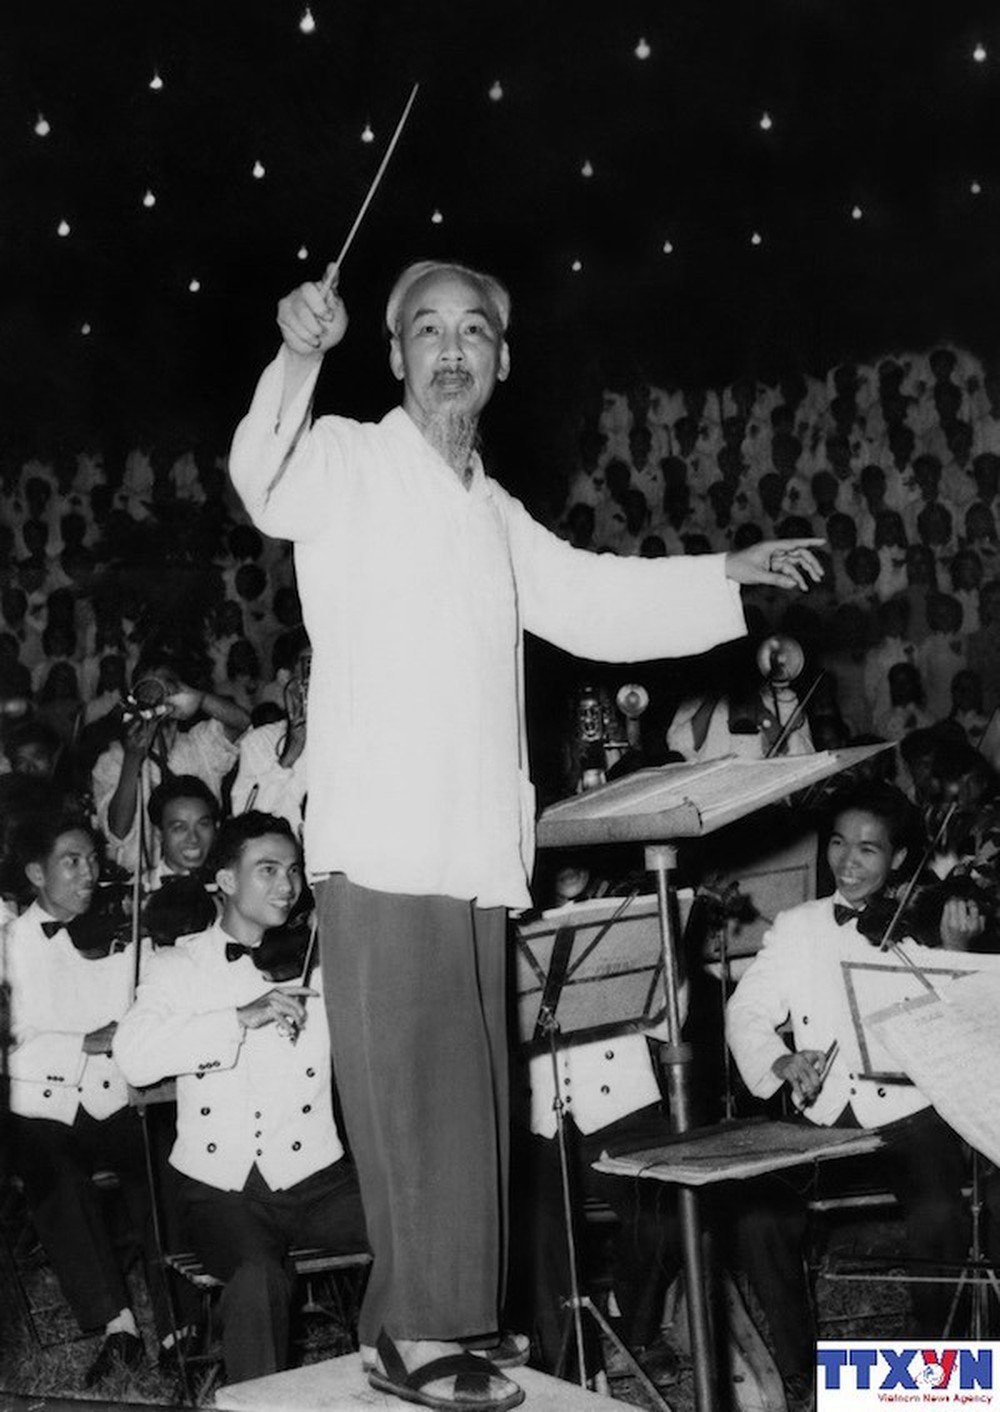 Kỷ niệm 130 năm ngày sinh Chủ tịch Hồ Chí Minh: Chủ tịch Hồ Chí Minh với sự nghiệp đại đoàn kết